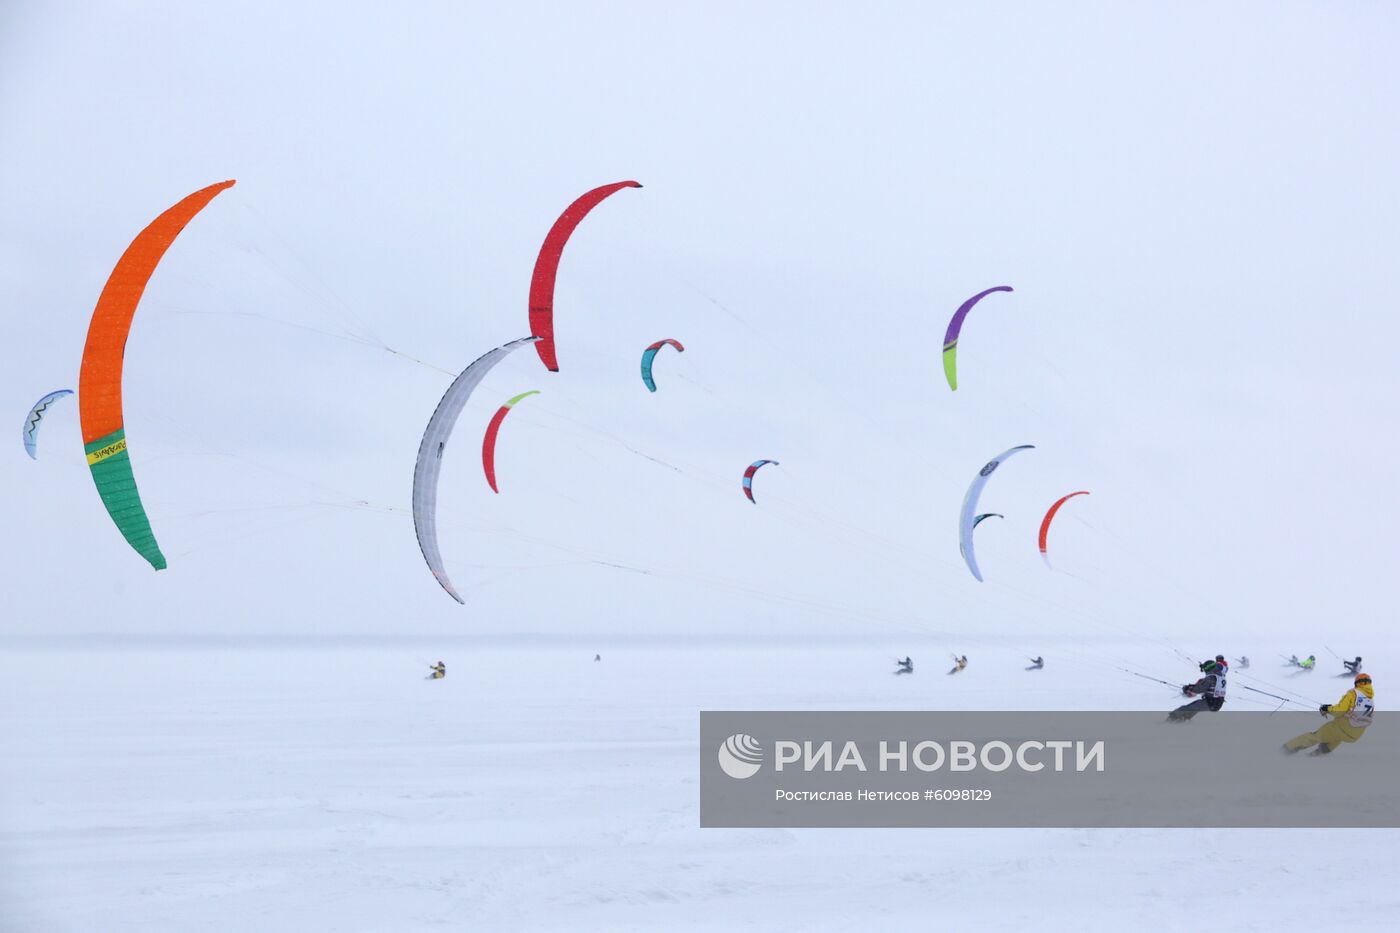 Сноукайтинг в Новосибирске